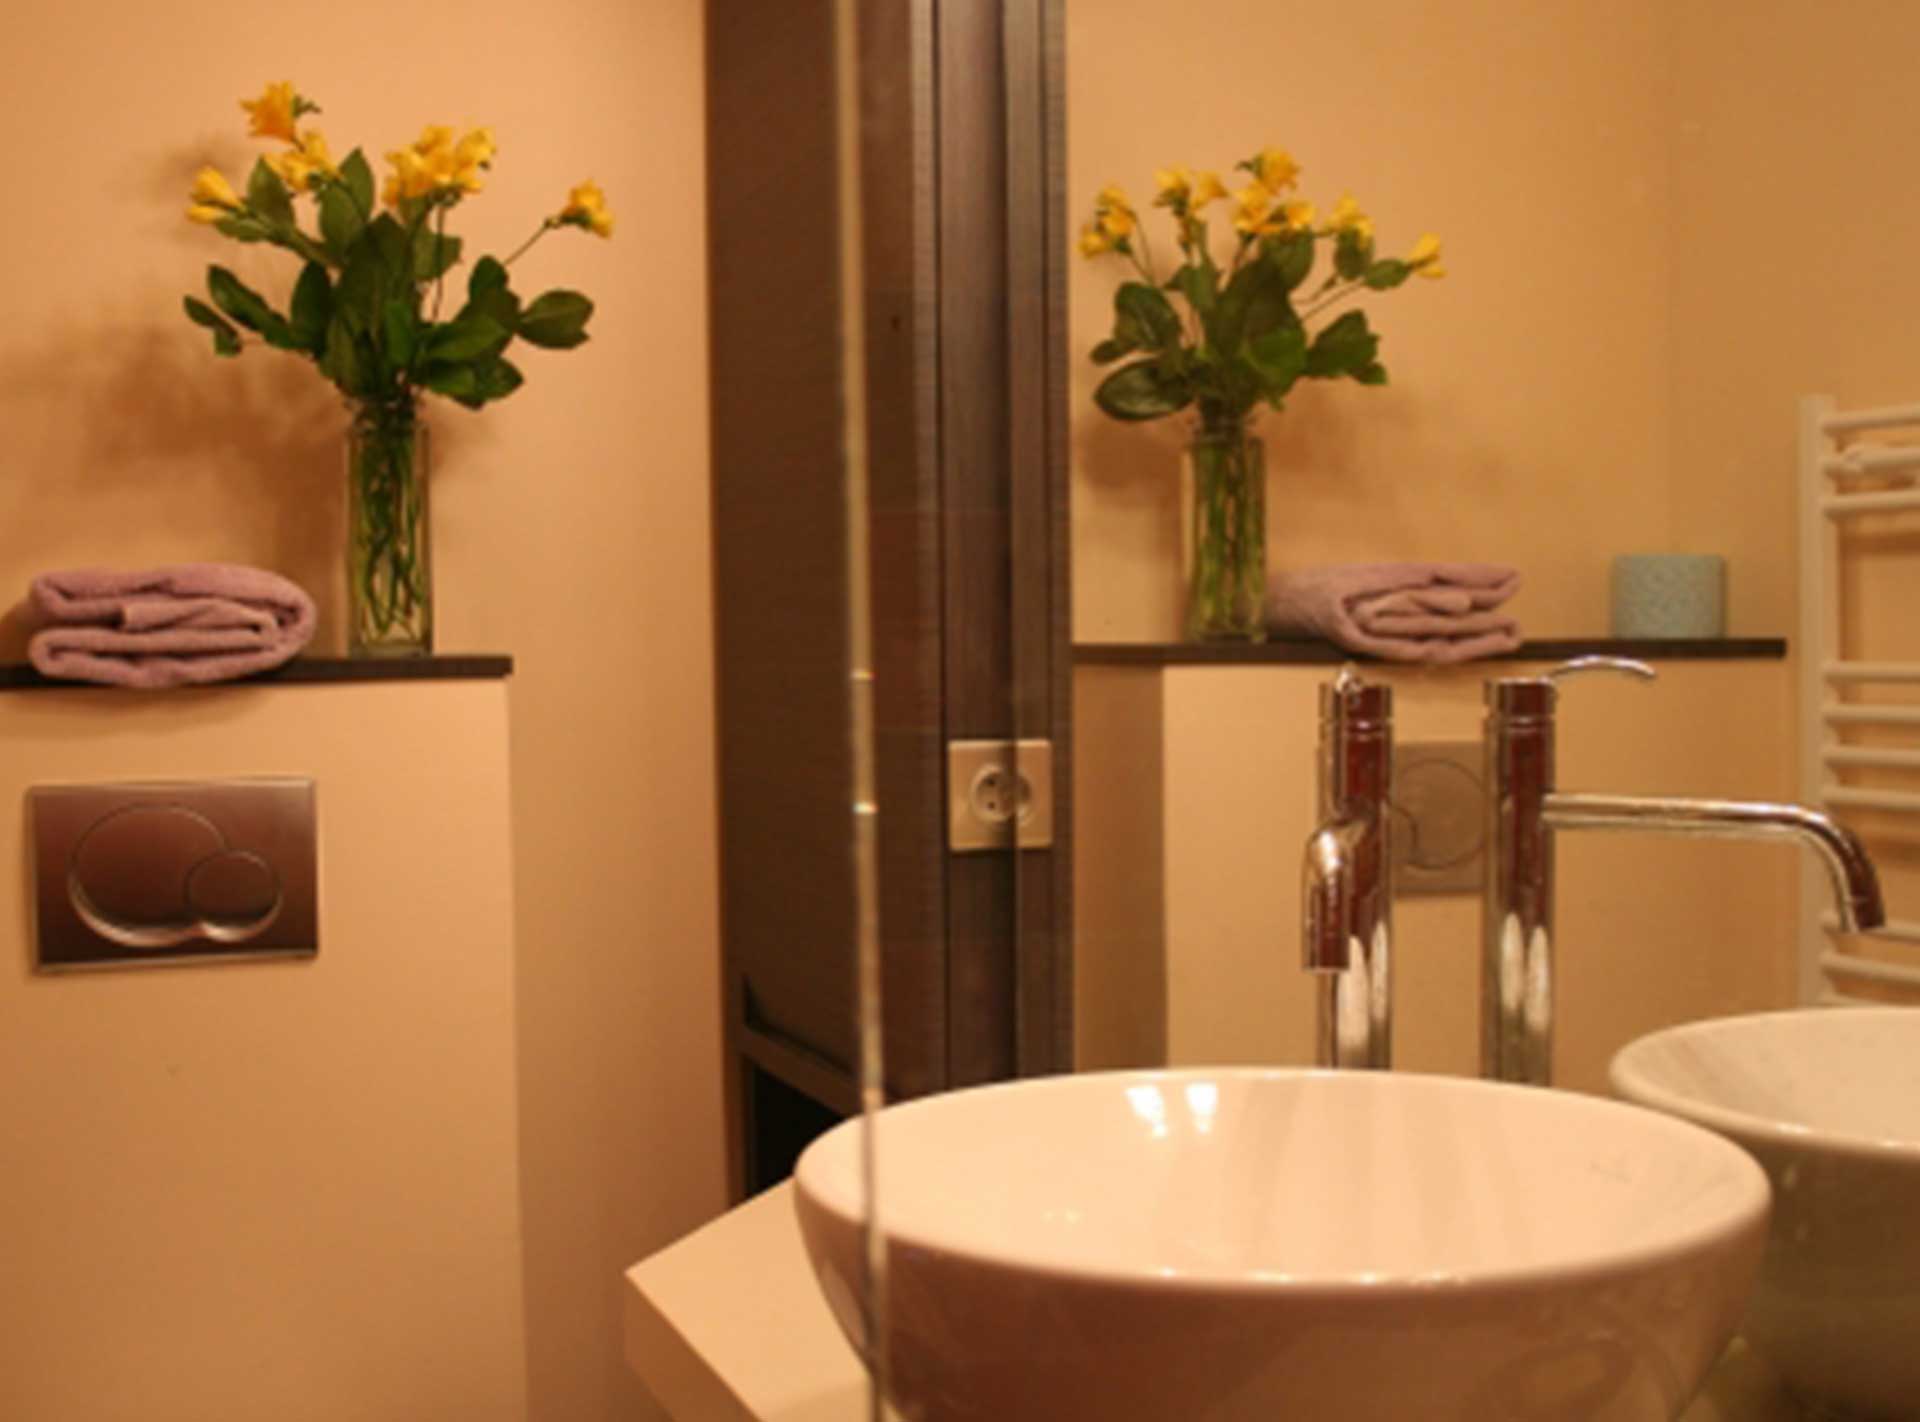 Toilettes d'une chambre d'un hotel particulier de Paris 6ème. Réalisation ID Interior Design par Anne-Laure Ferry-Adam, architecte d'intérieur Genève.